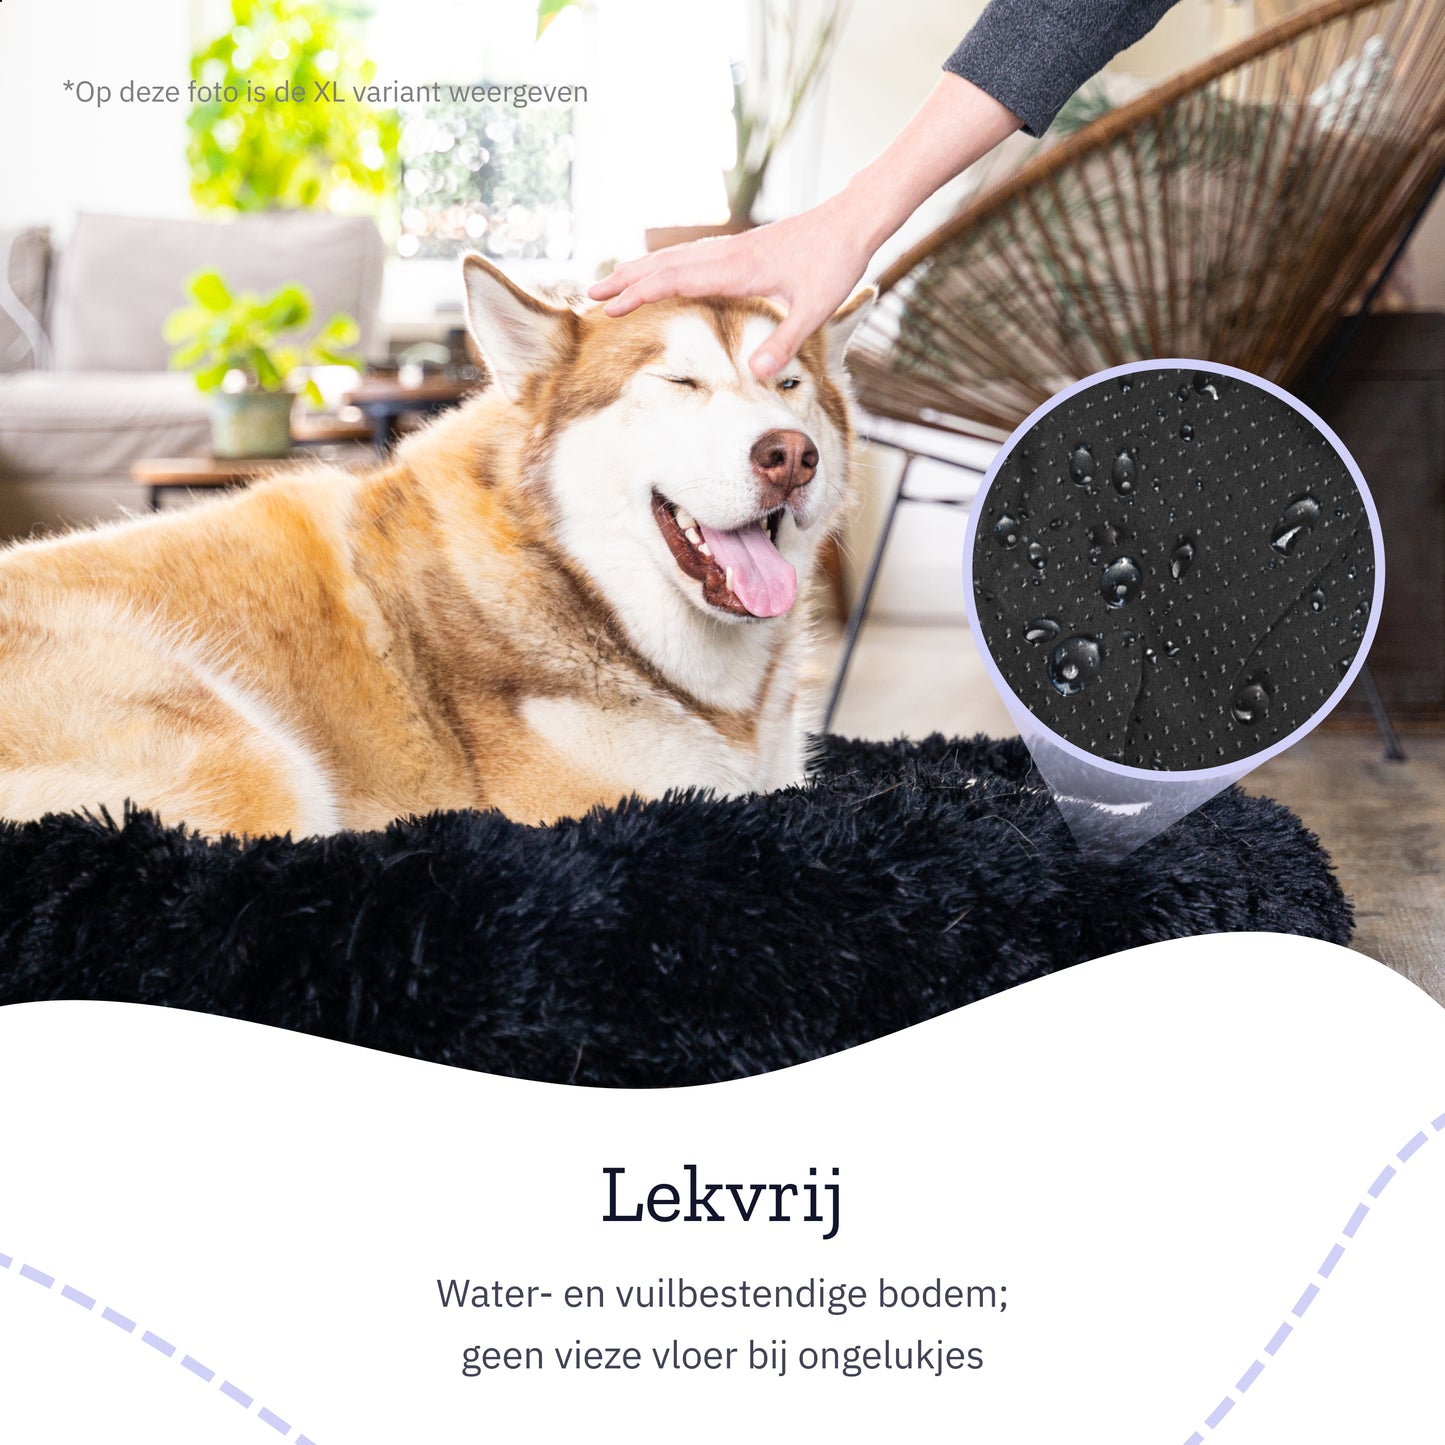 All 4 Pets Supply® Hondenmand Donut - Maat L - Geschikt Voor Honden Tot 60 cm